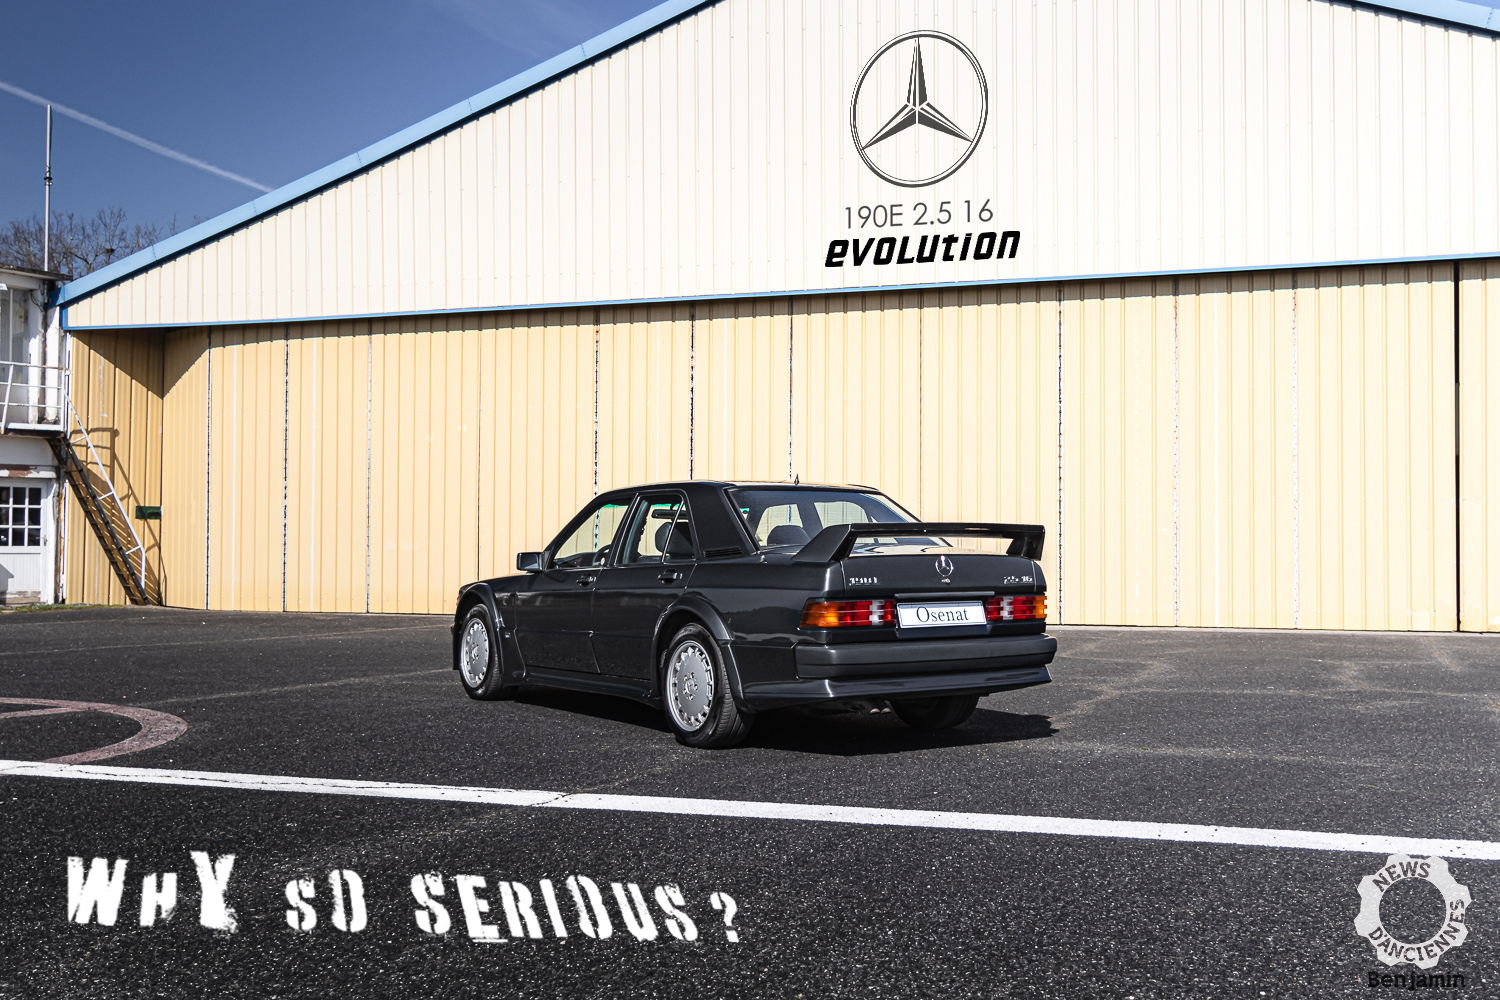 Essai d’une Mercedes 190E 2.5 16 Evo : why so serious ?